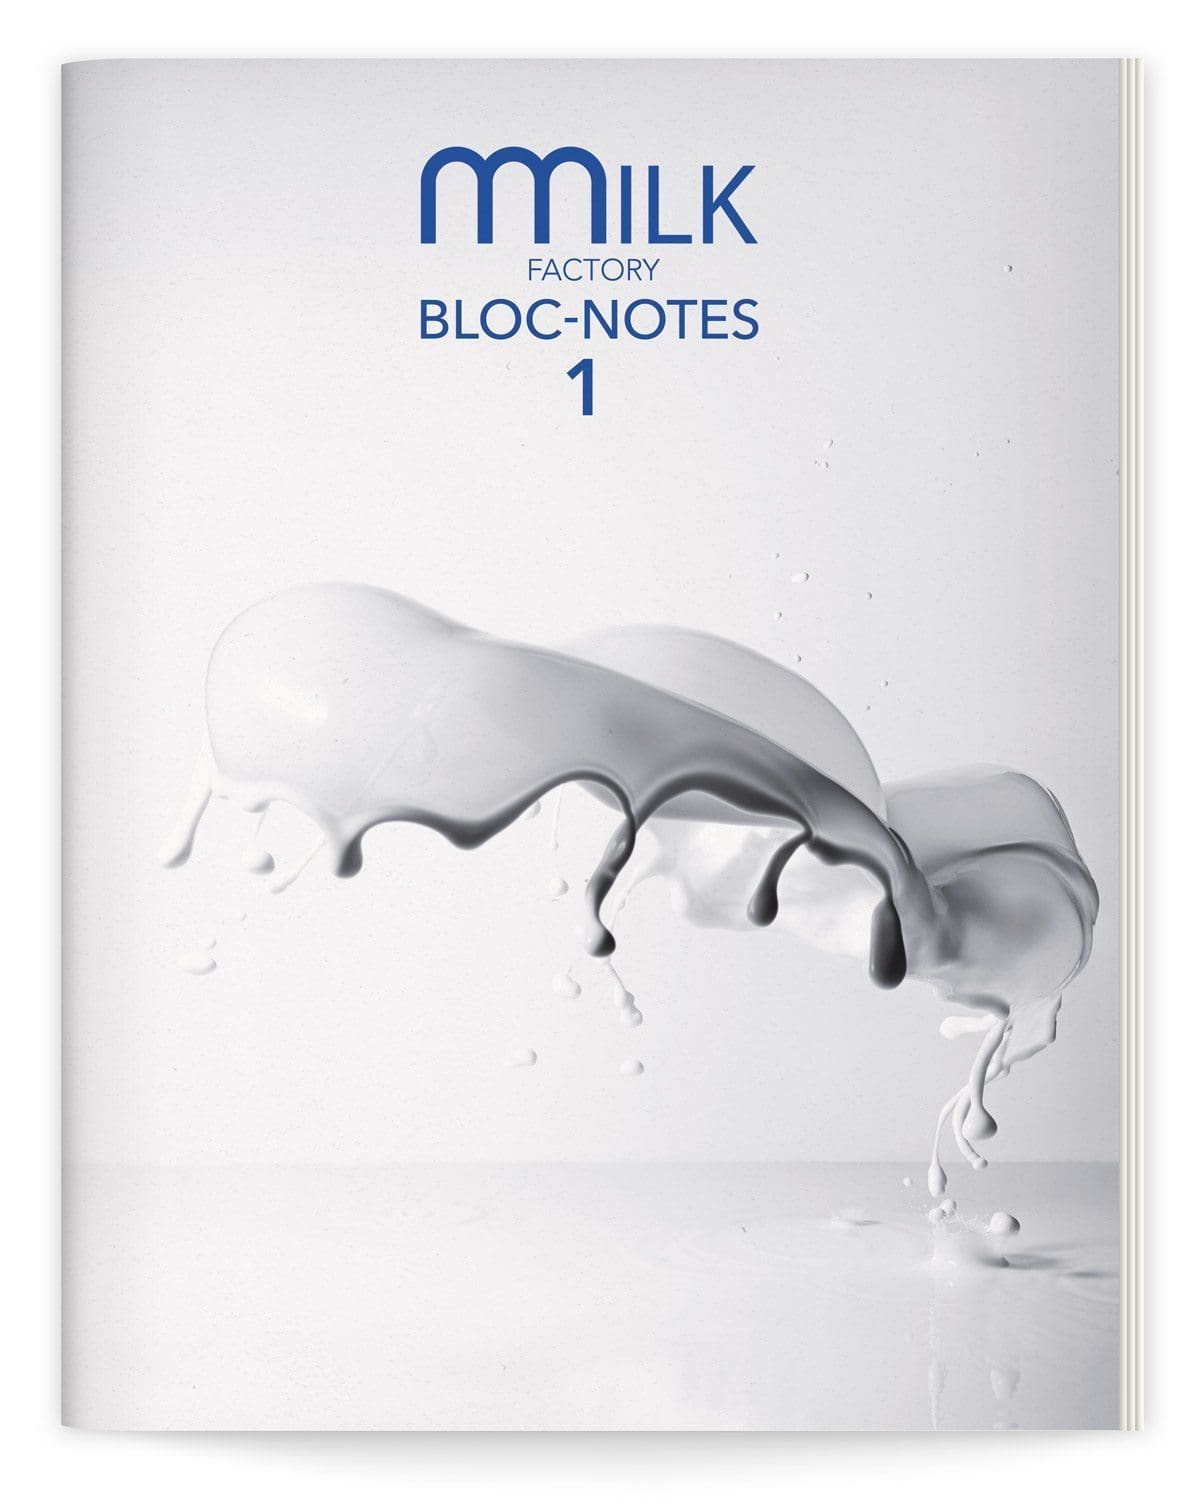 bloc-notes de la milk factory 1 le lait par ichetkar couverture giclée lait photographie jean jacques pallot